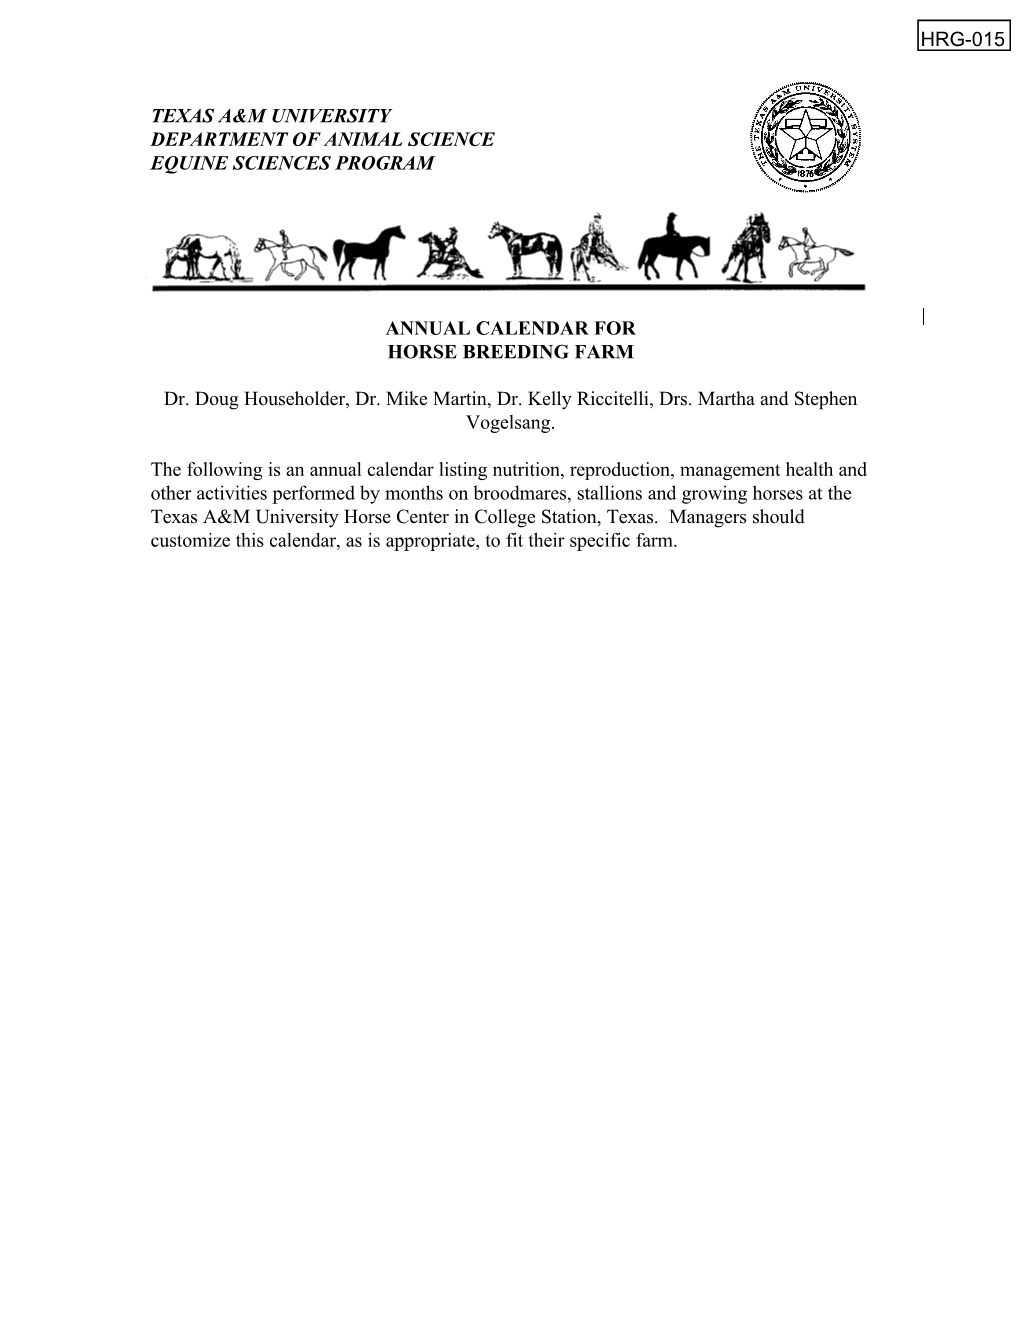 Annual Calendar for Horse Breeding Farm